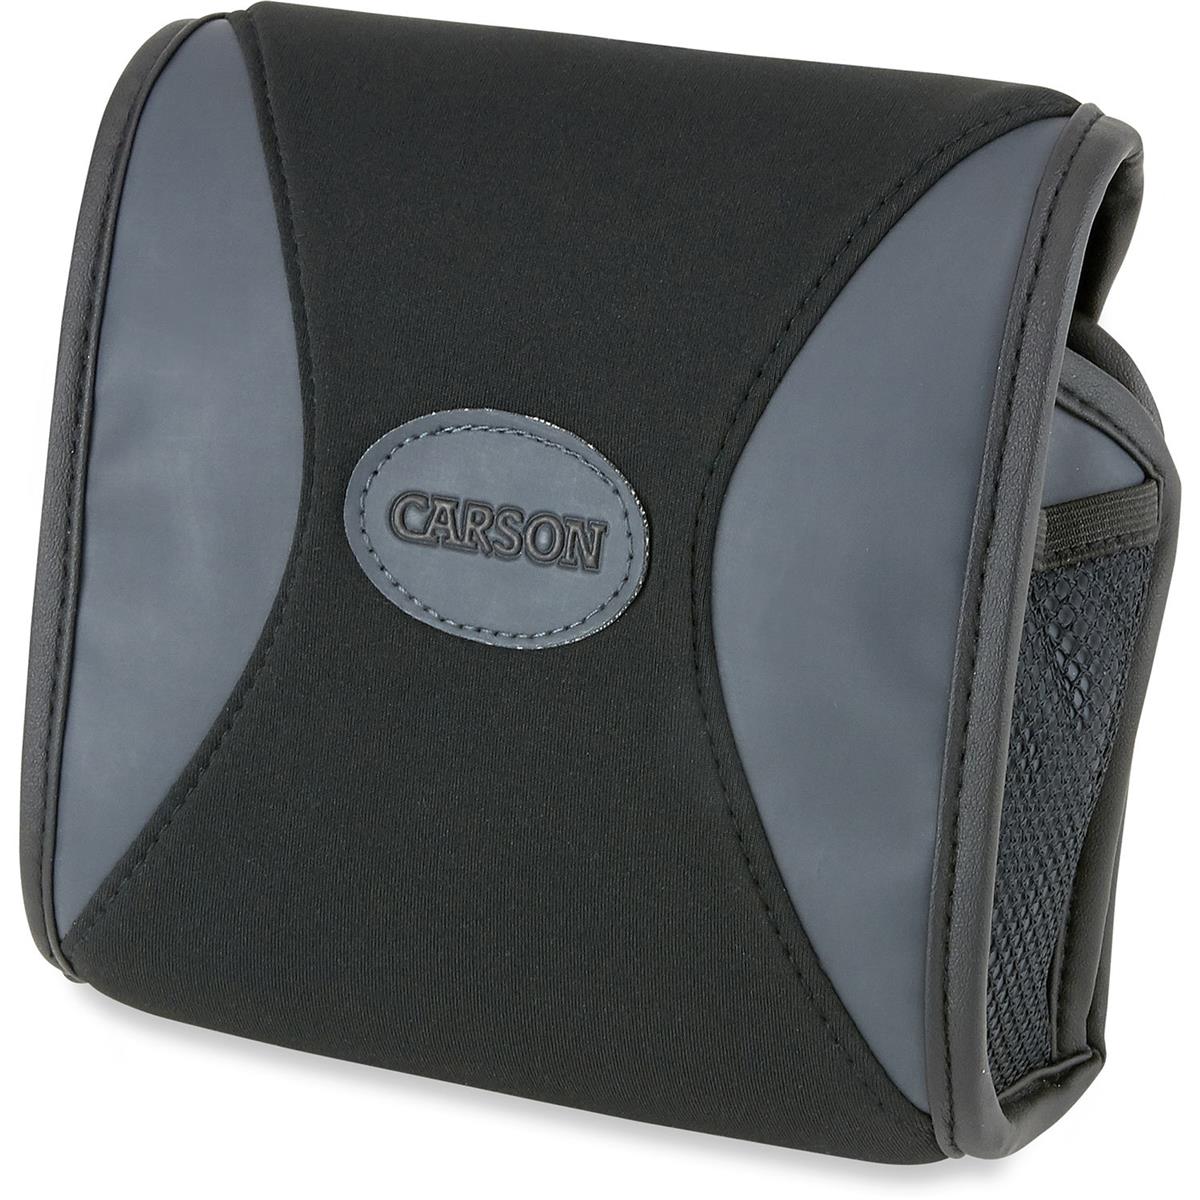 

Carson BA-07 BinoArmor Deluxe Easy-Access Protective Case